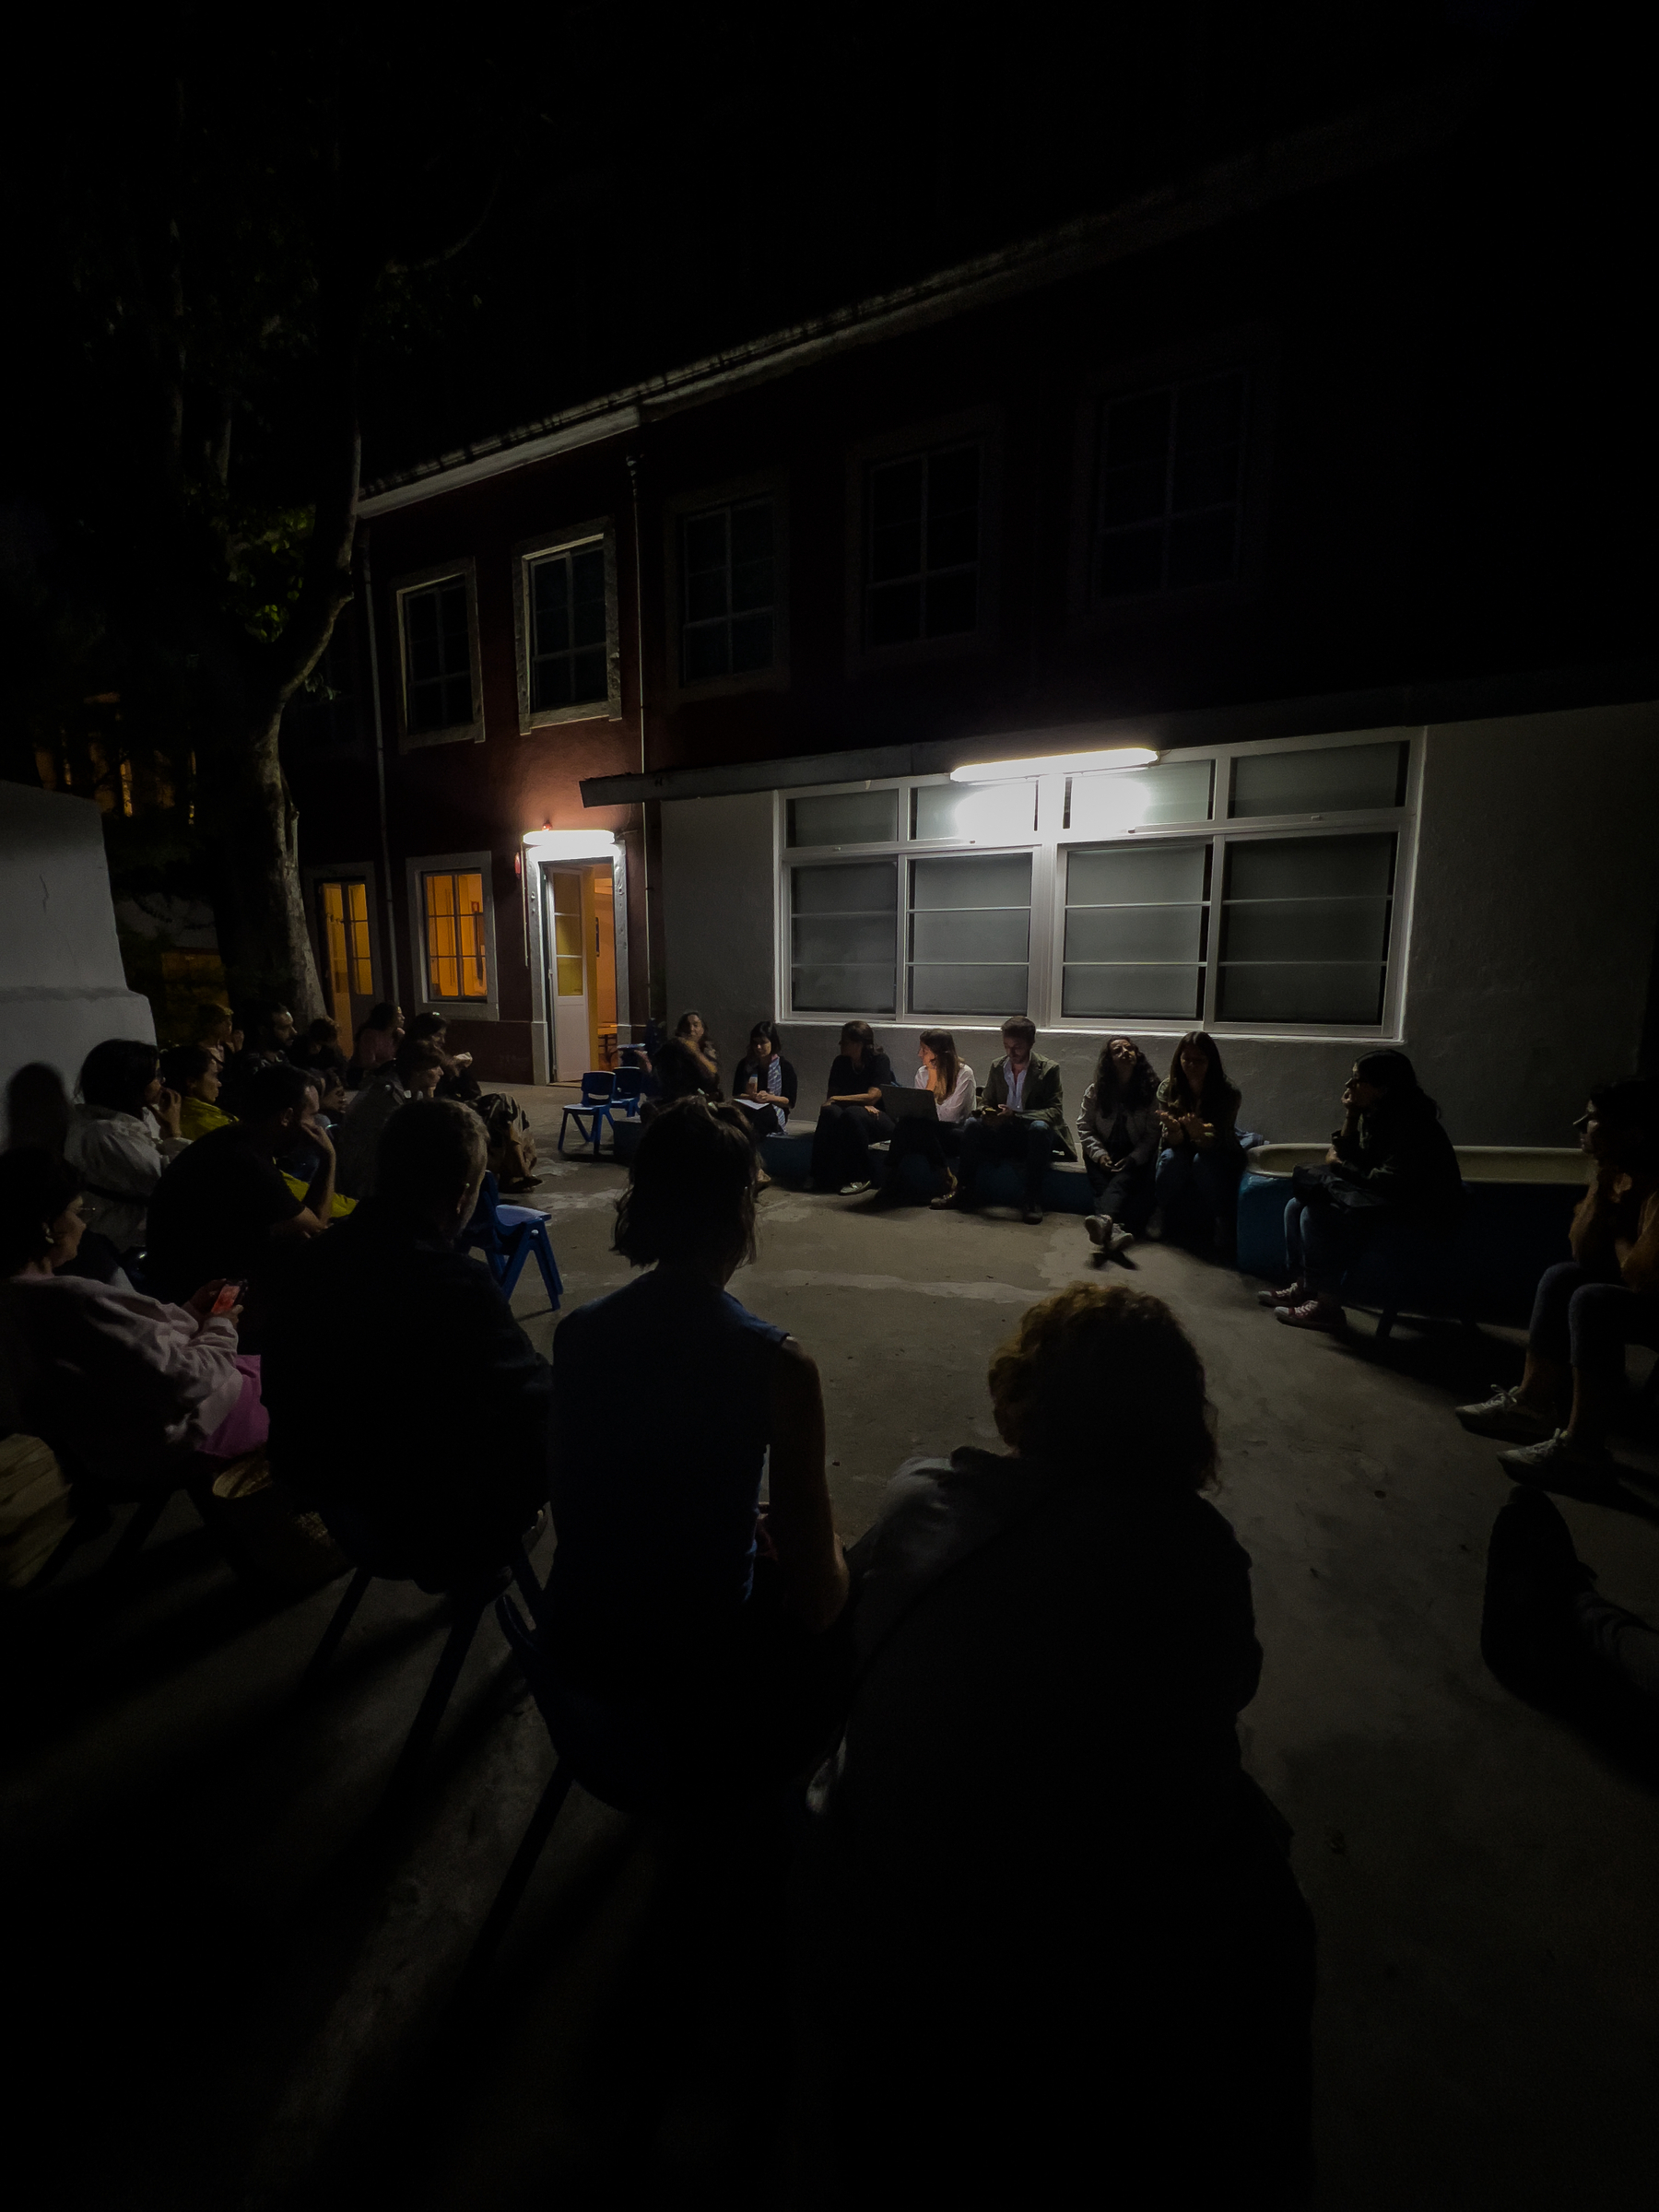 People sitting in the dark, meeting. 